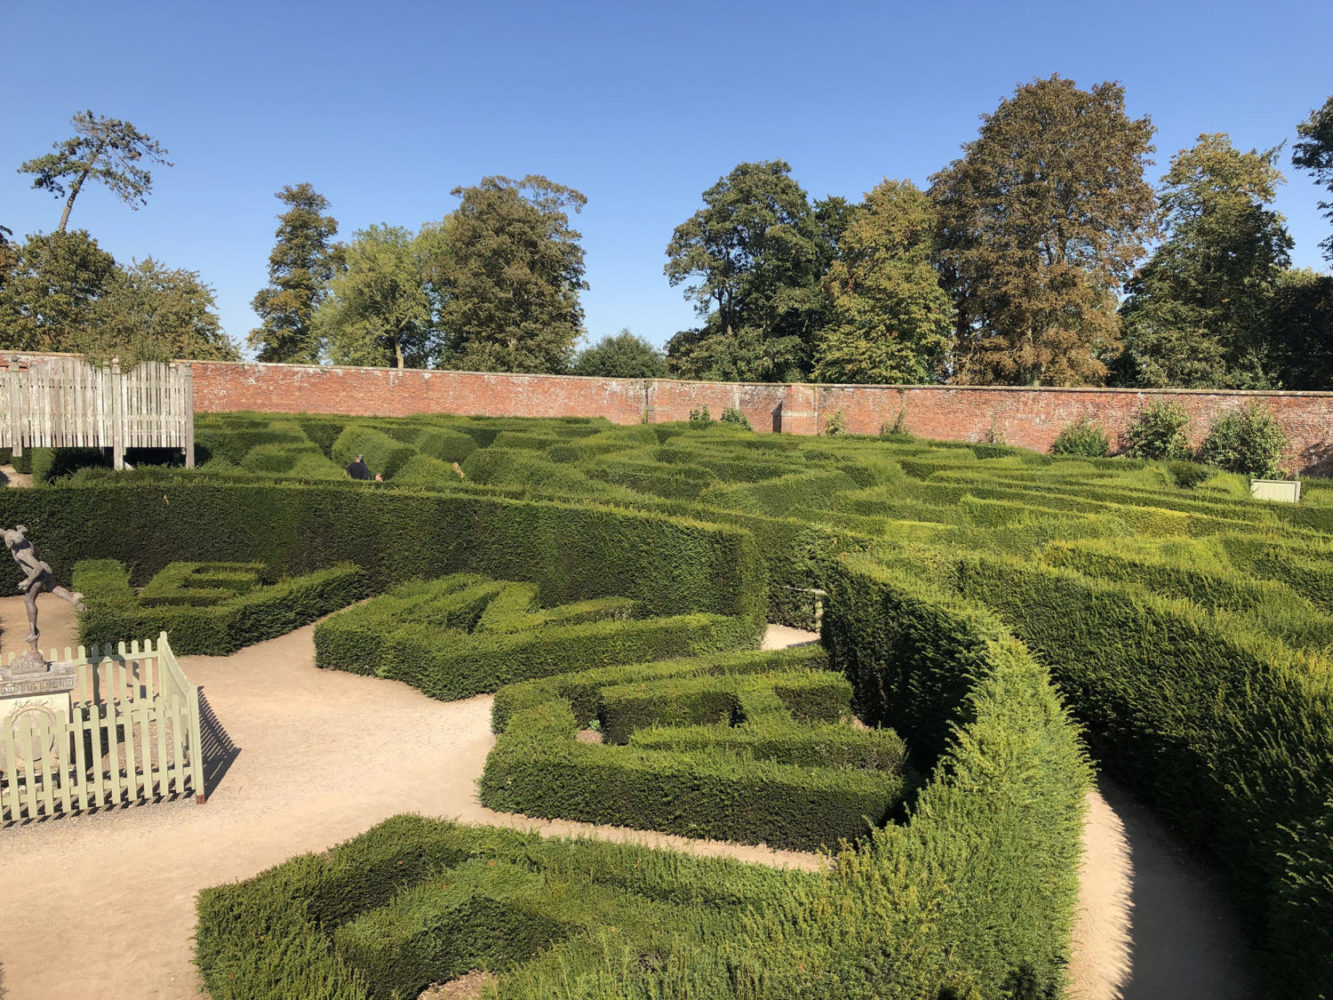 garden maze in england